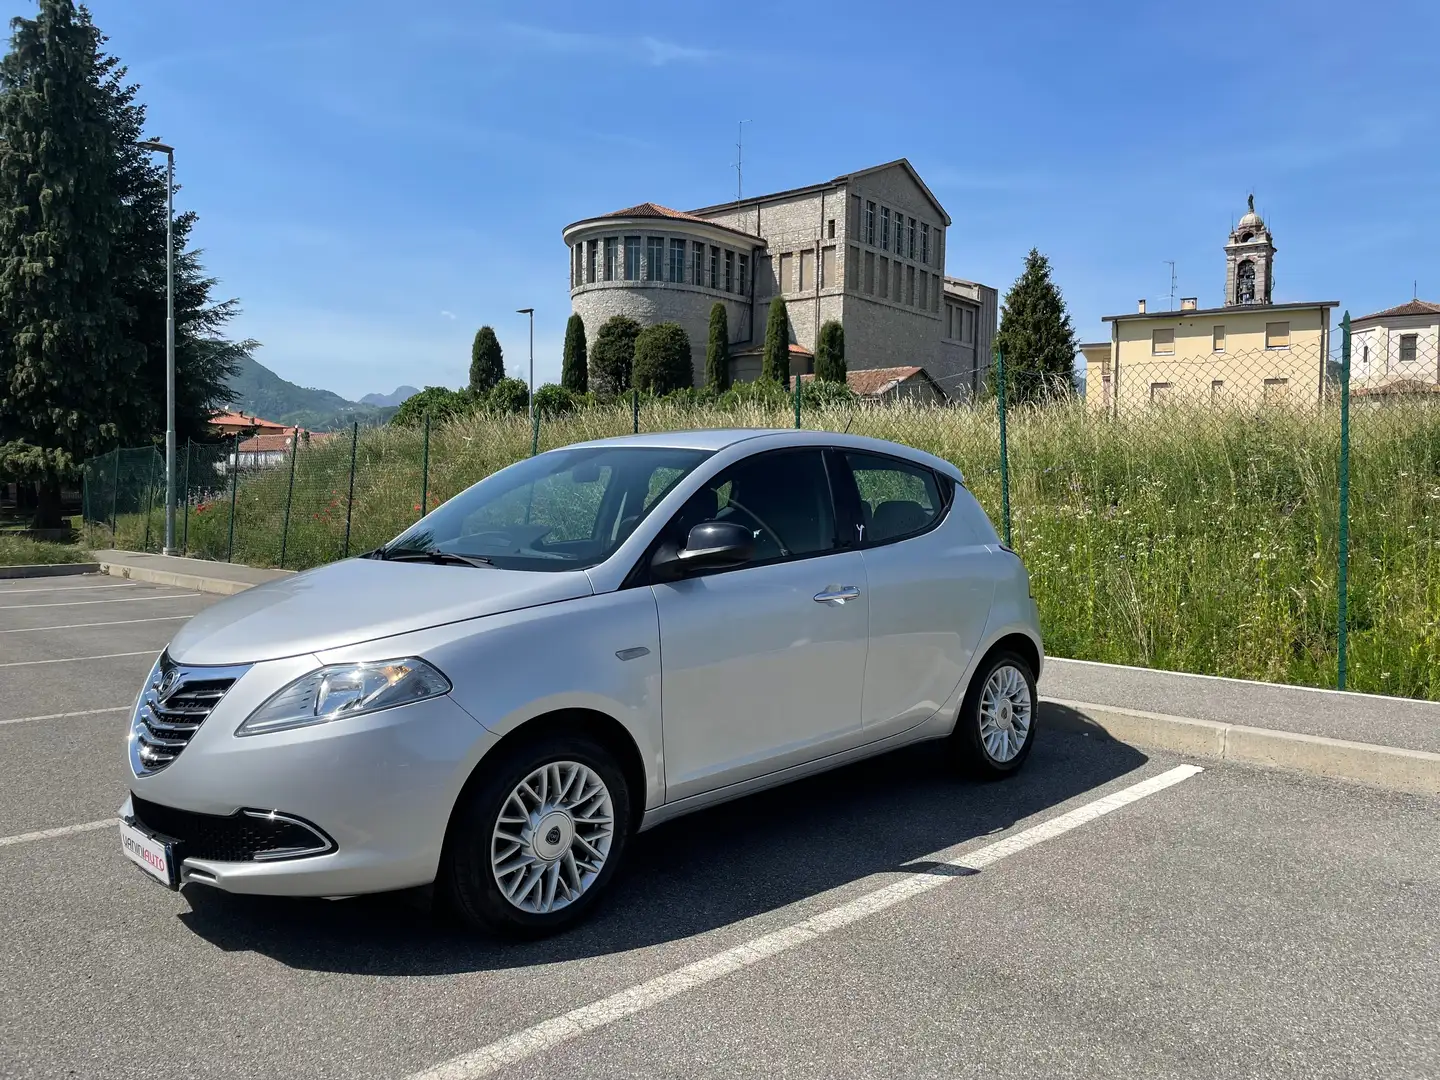 usato Lancia Ypsilon Berlina a Villa D'Almè – Bergamo per € 9.990,-